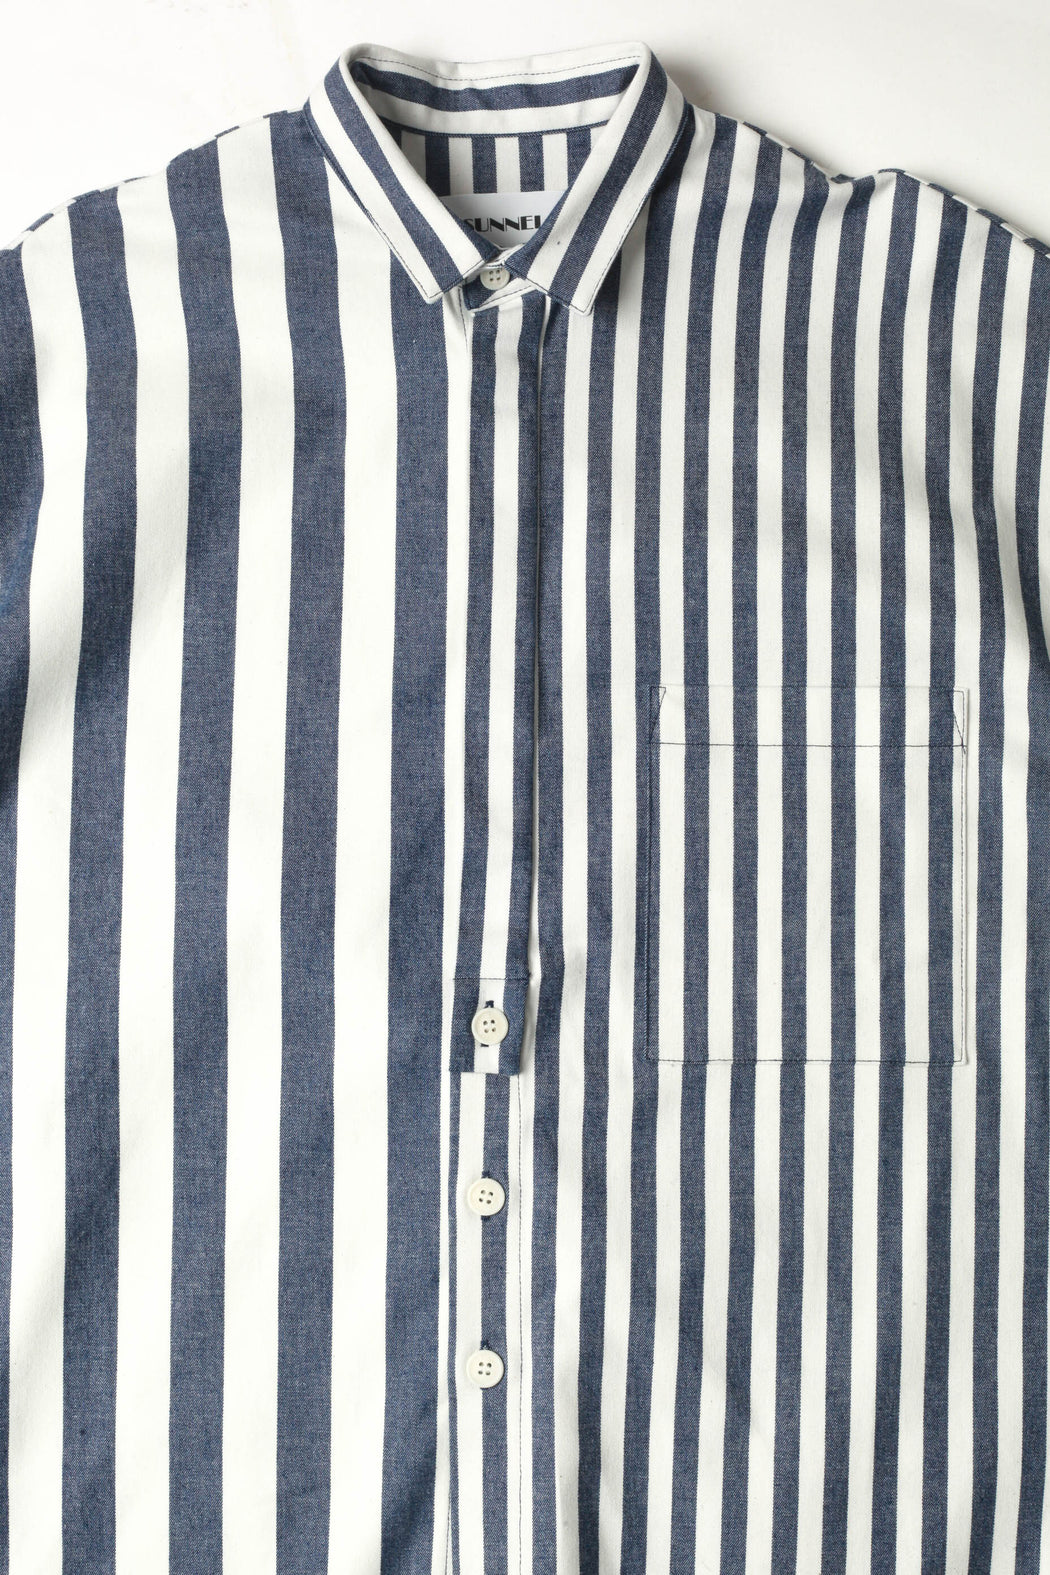 Long Over Shirt - Blue/White